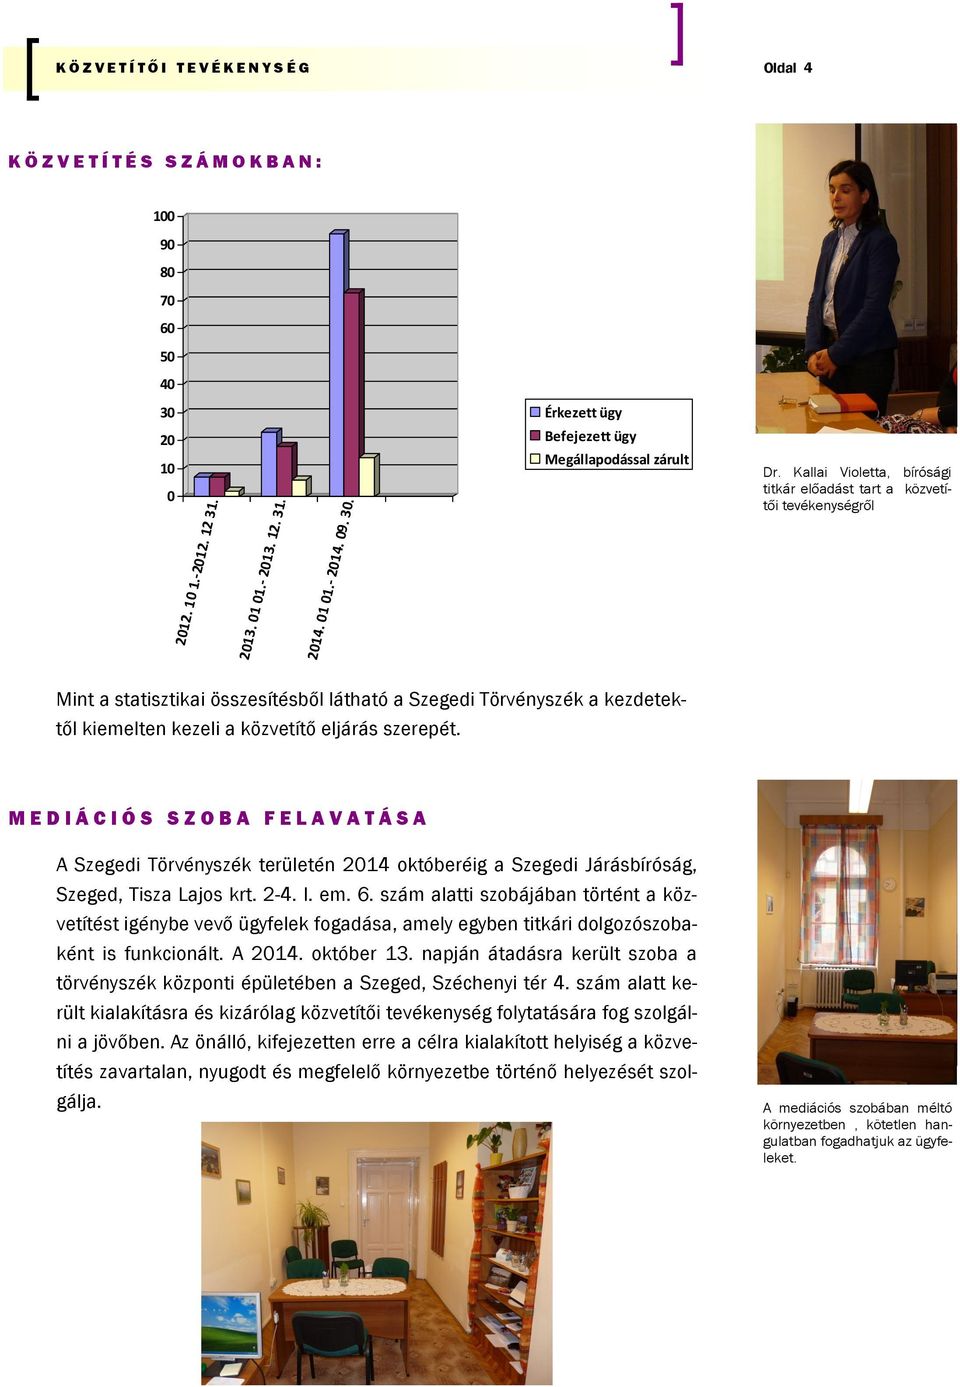 Kallai Violetta, bírósági titkár előadást tart a közvetítői tevékenységről Mint a statisztikai összesítésből látható a Szegedi Törvényszék a kezdetektől kiemelten kezeli a közvetítő eljárás szerepét.